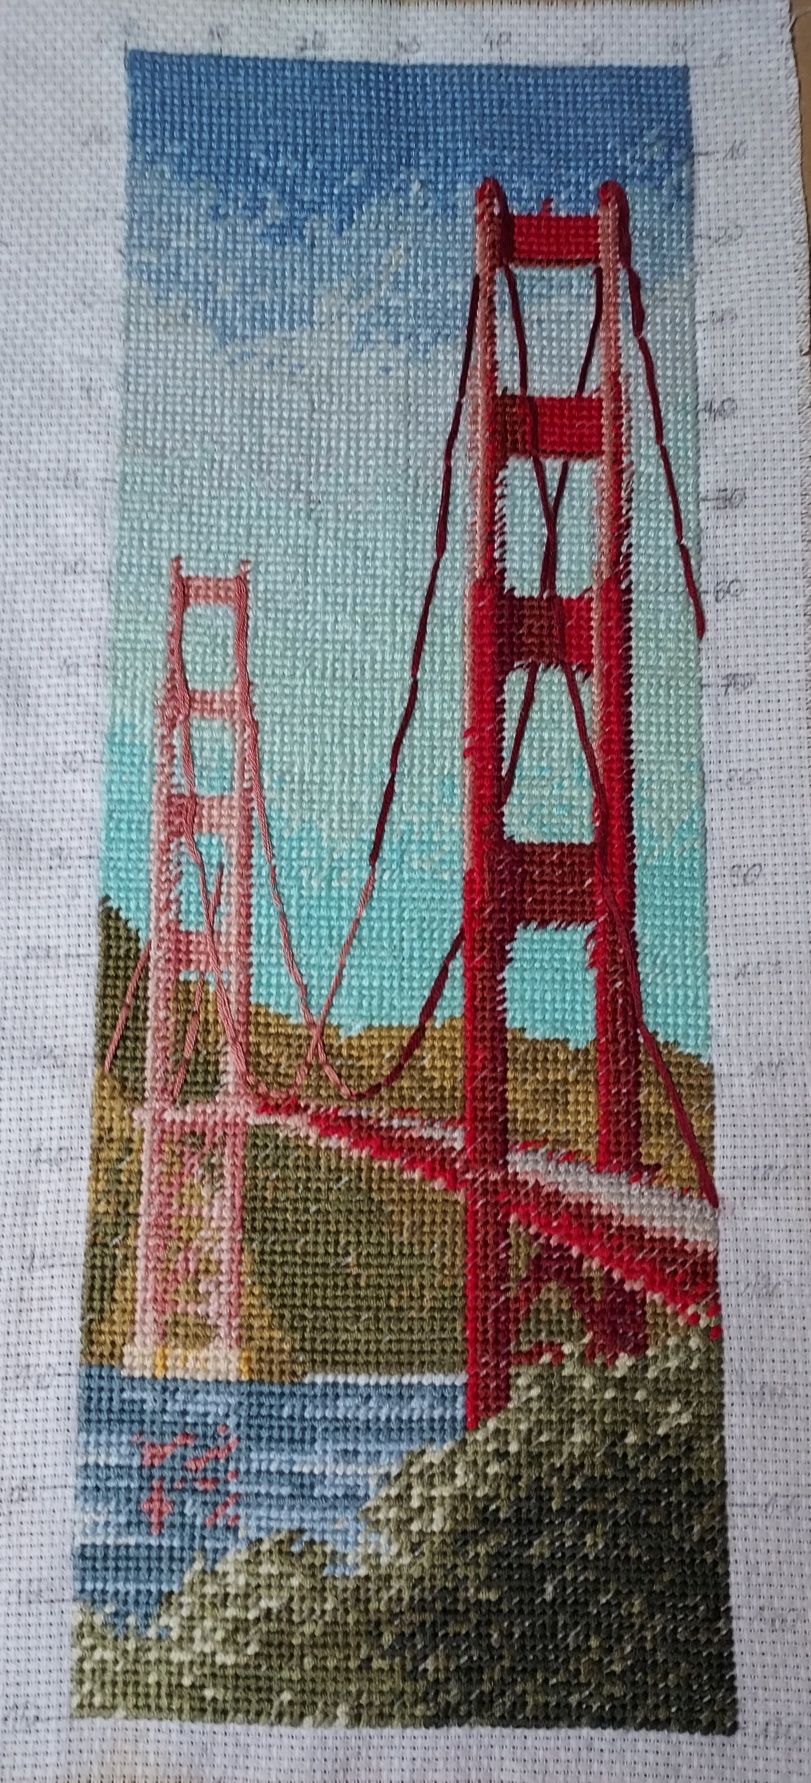 Obraz haft krzyżykowy- Golden Gate Bridge San Francisco